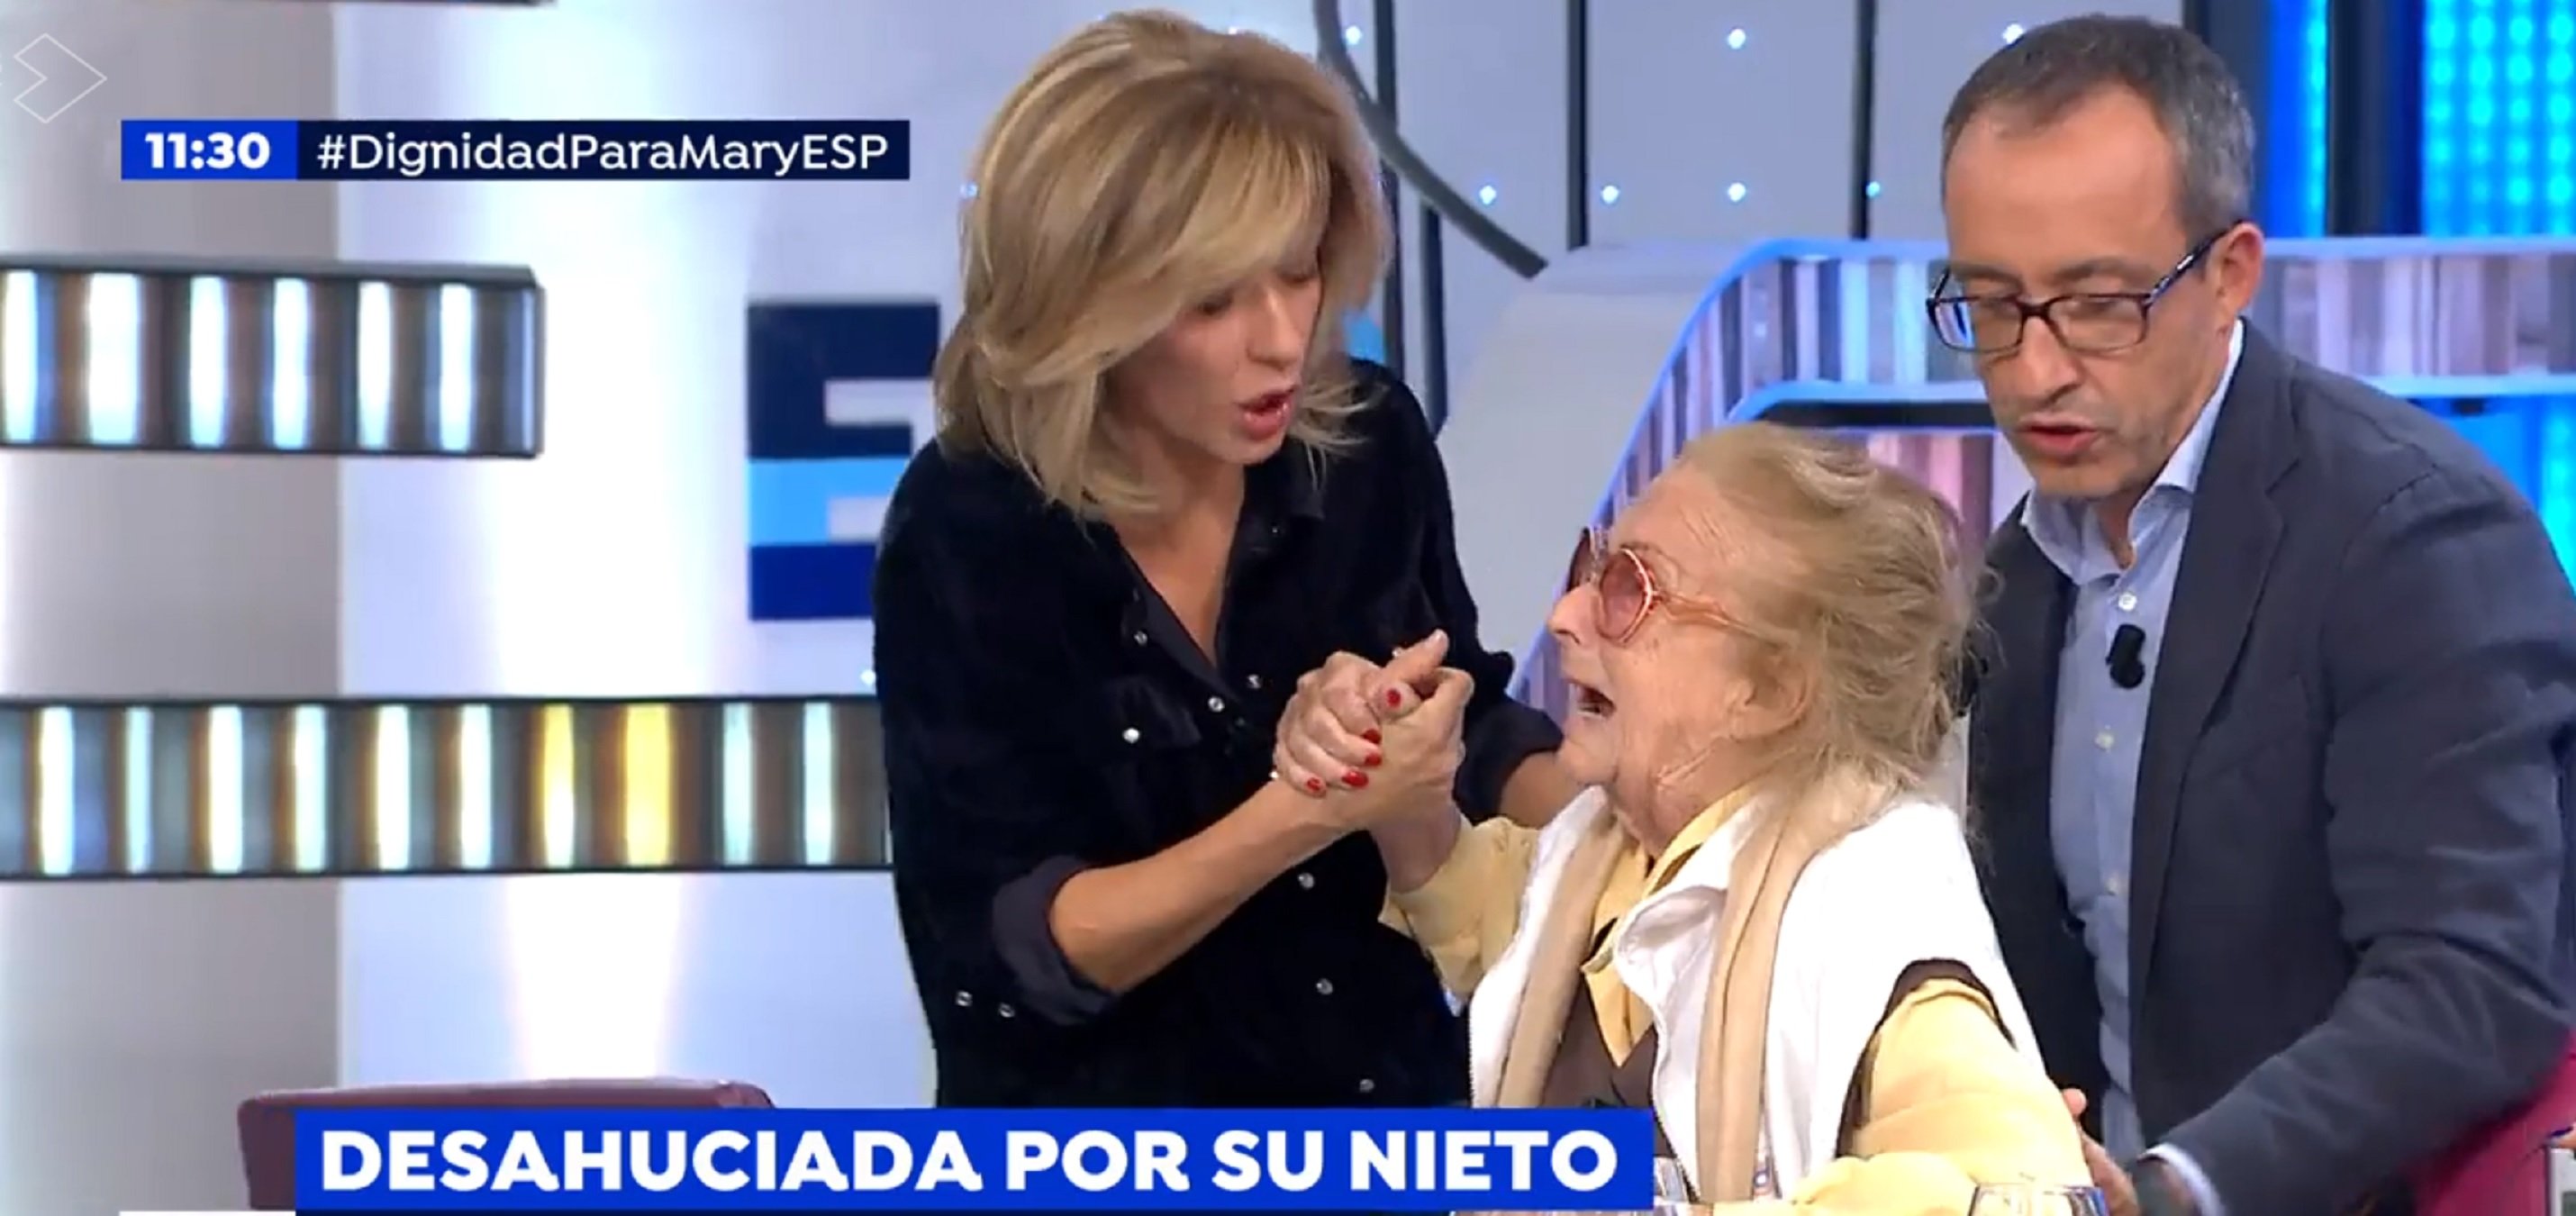 Xou de Griso i una desnonada de 98 anys: "Traed la silla de ruedas, ¡por Dios!"